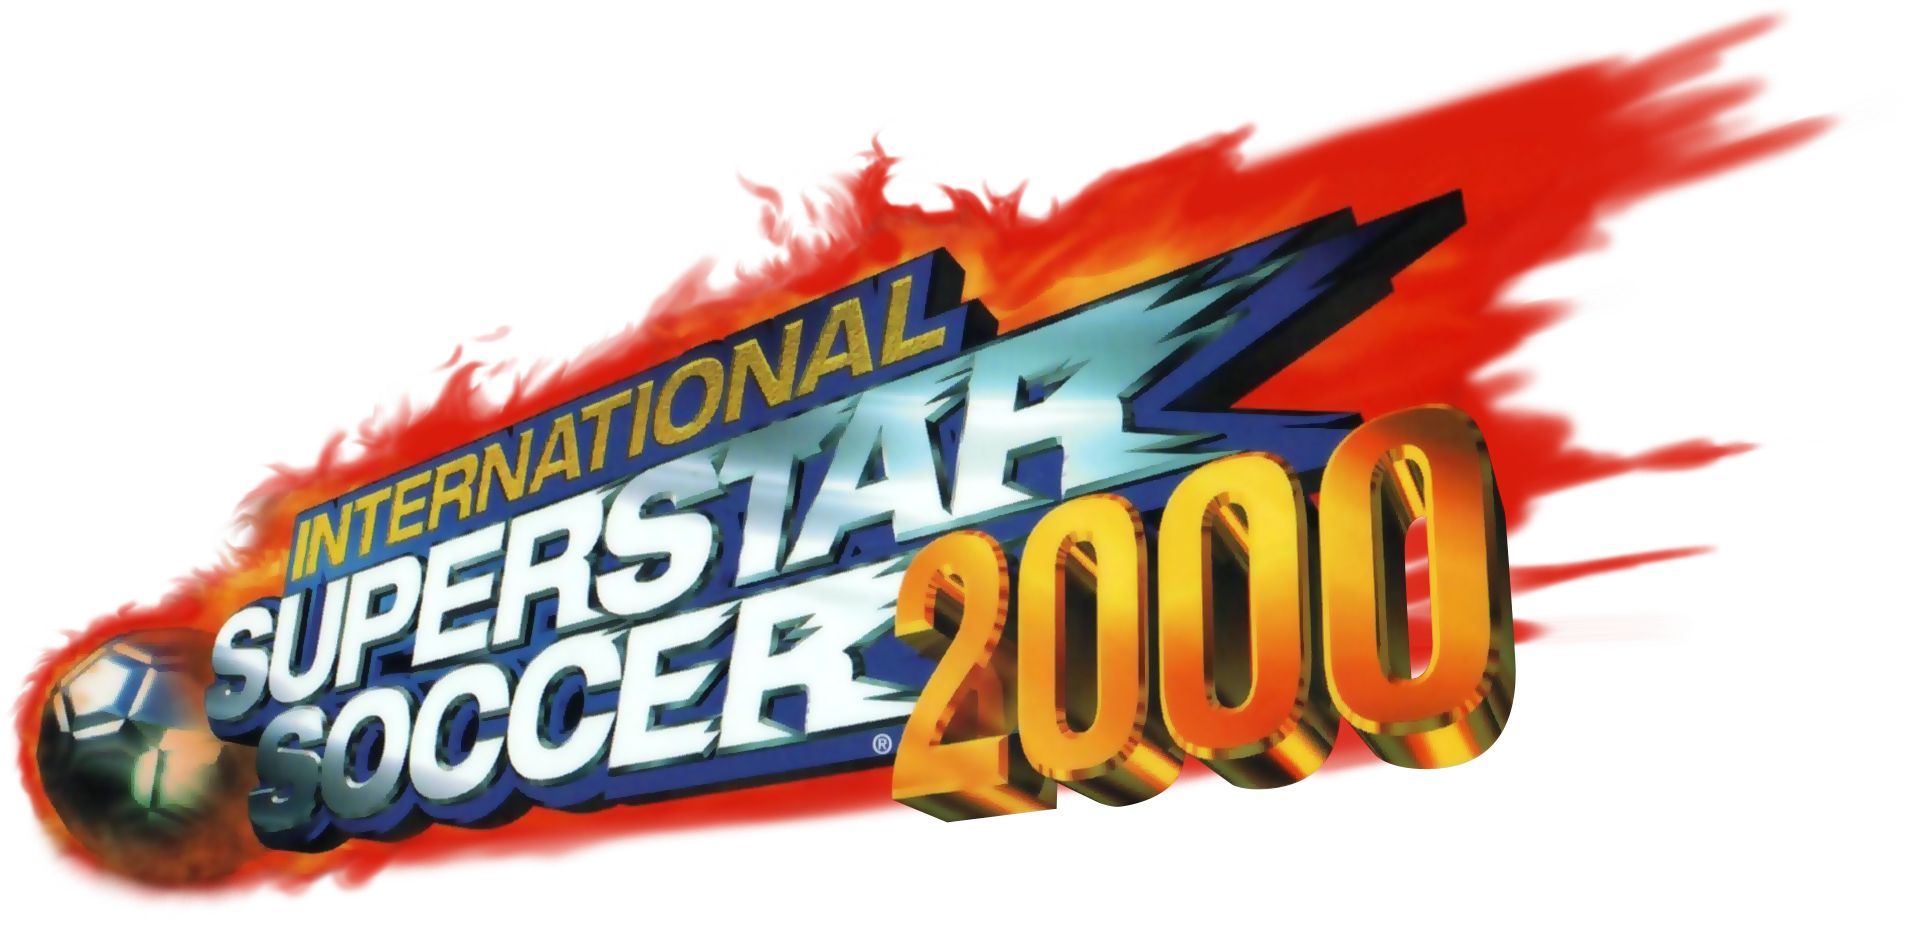 Soccer 2000